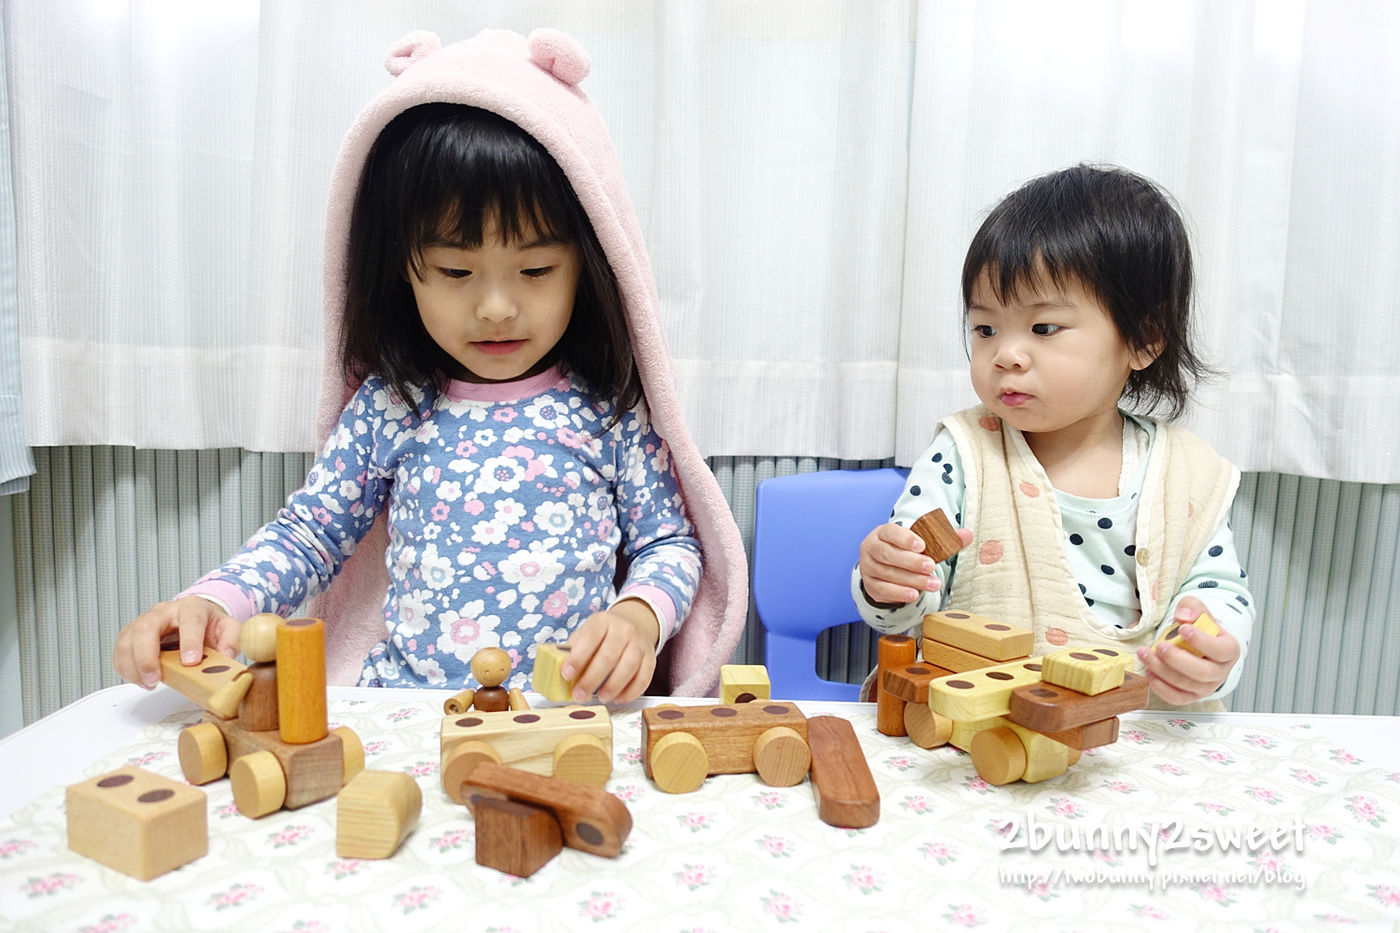 [玩具。分享] 創意無限的高質感積木～韓國 Soopsori 蘇索力磁性木積木 @兔兒毛毛姊妹花